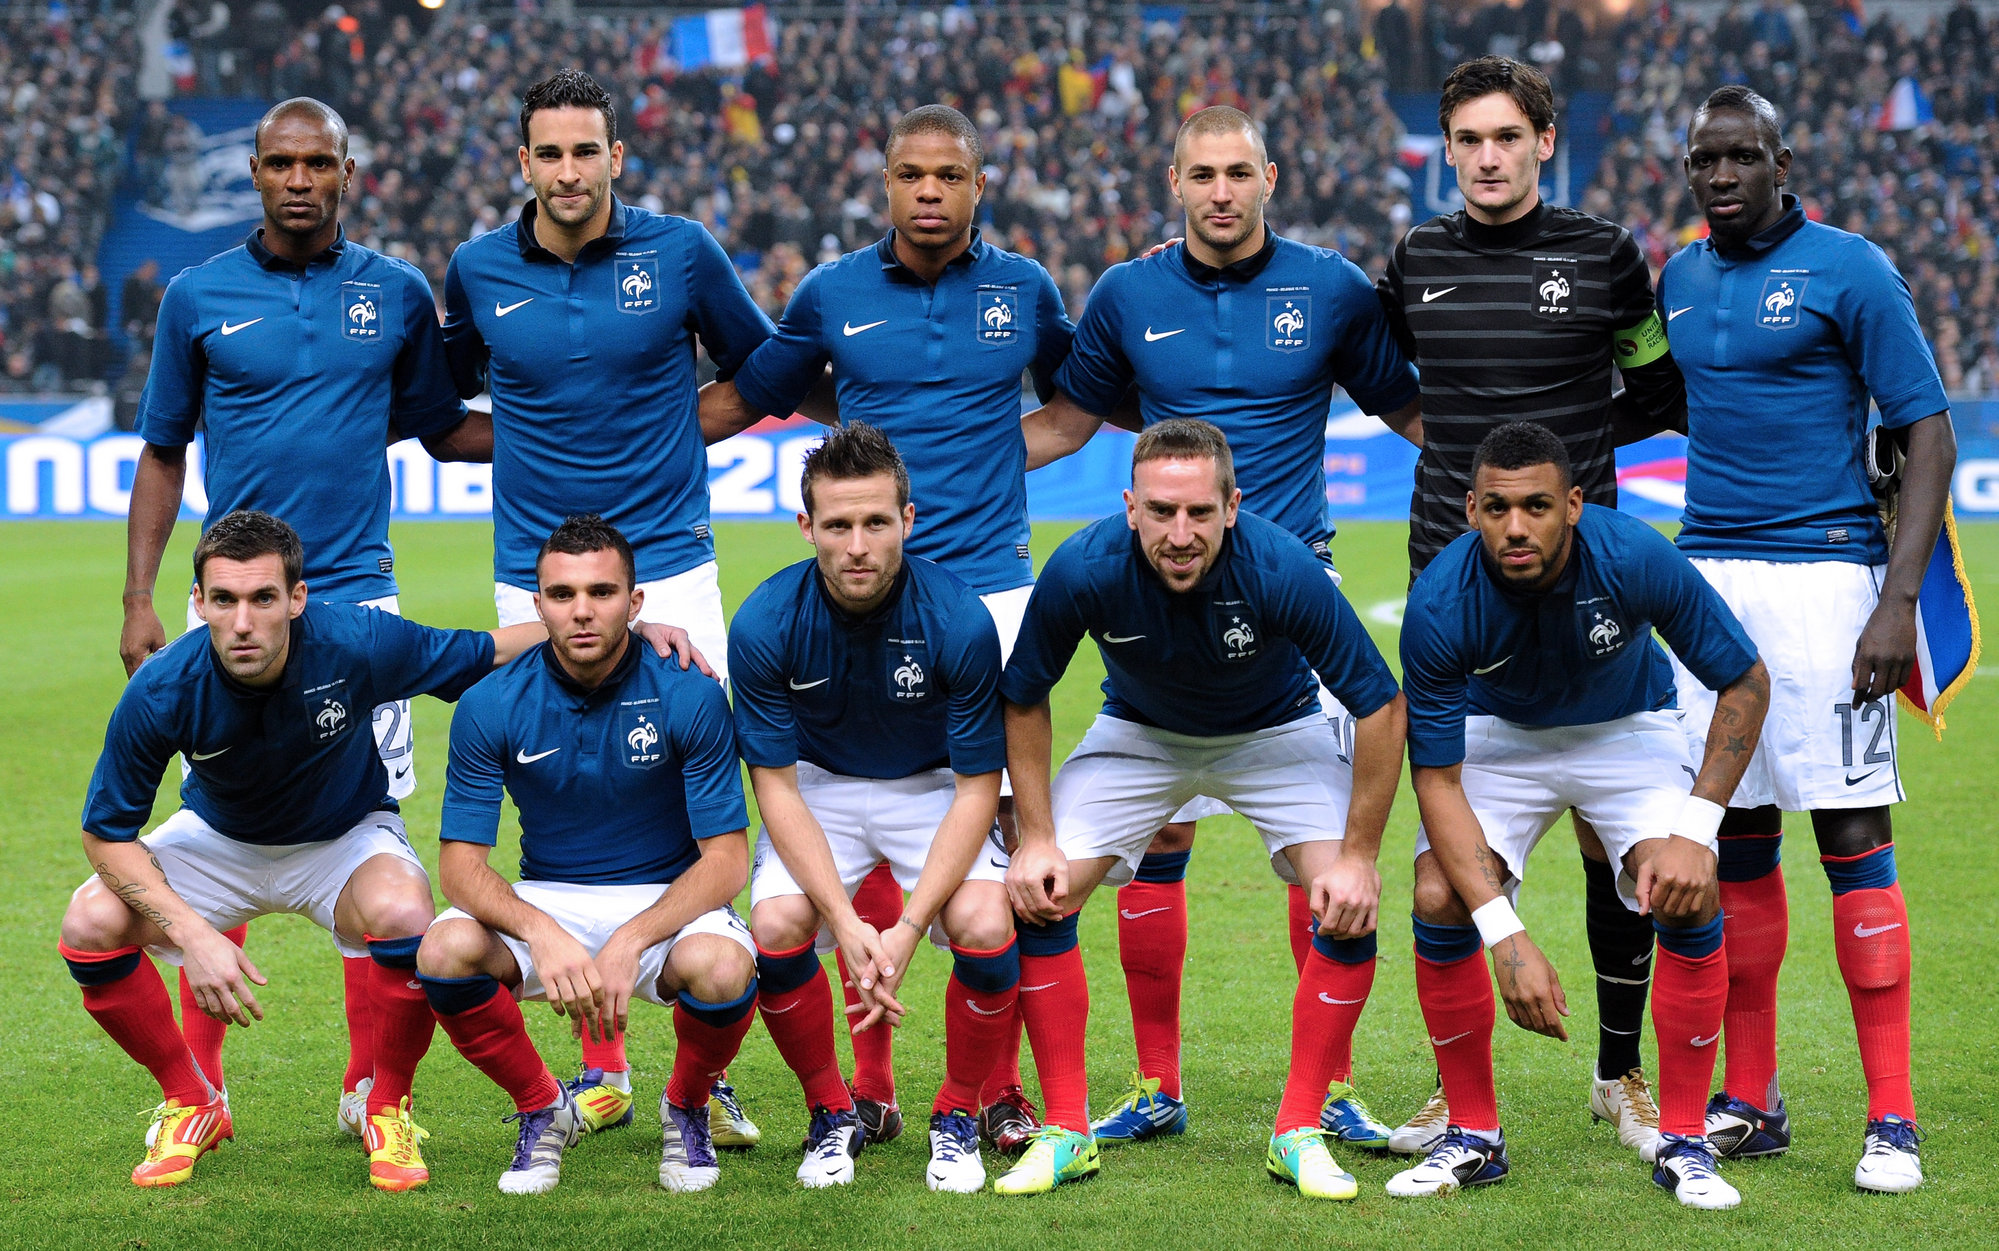 La nueva Francia de Blanc y Benzema buscará la gloria en la Euro